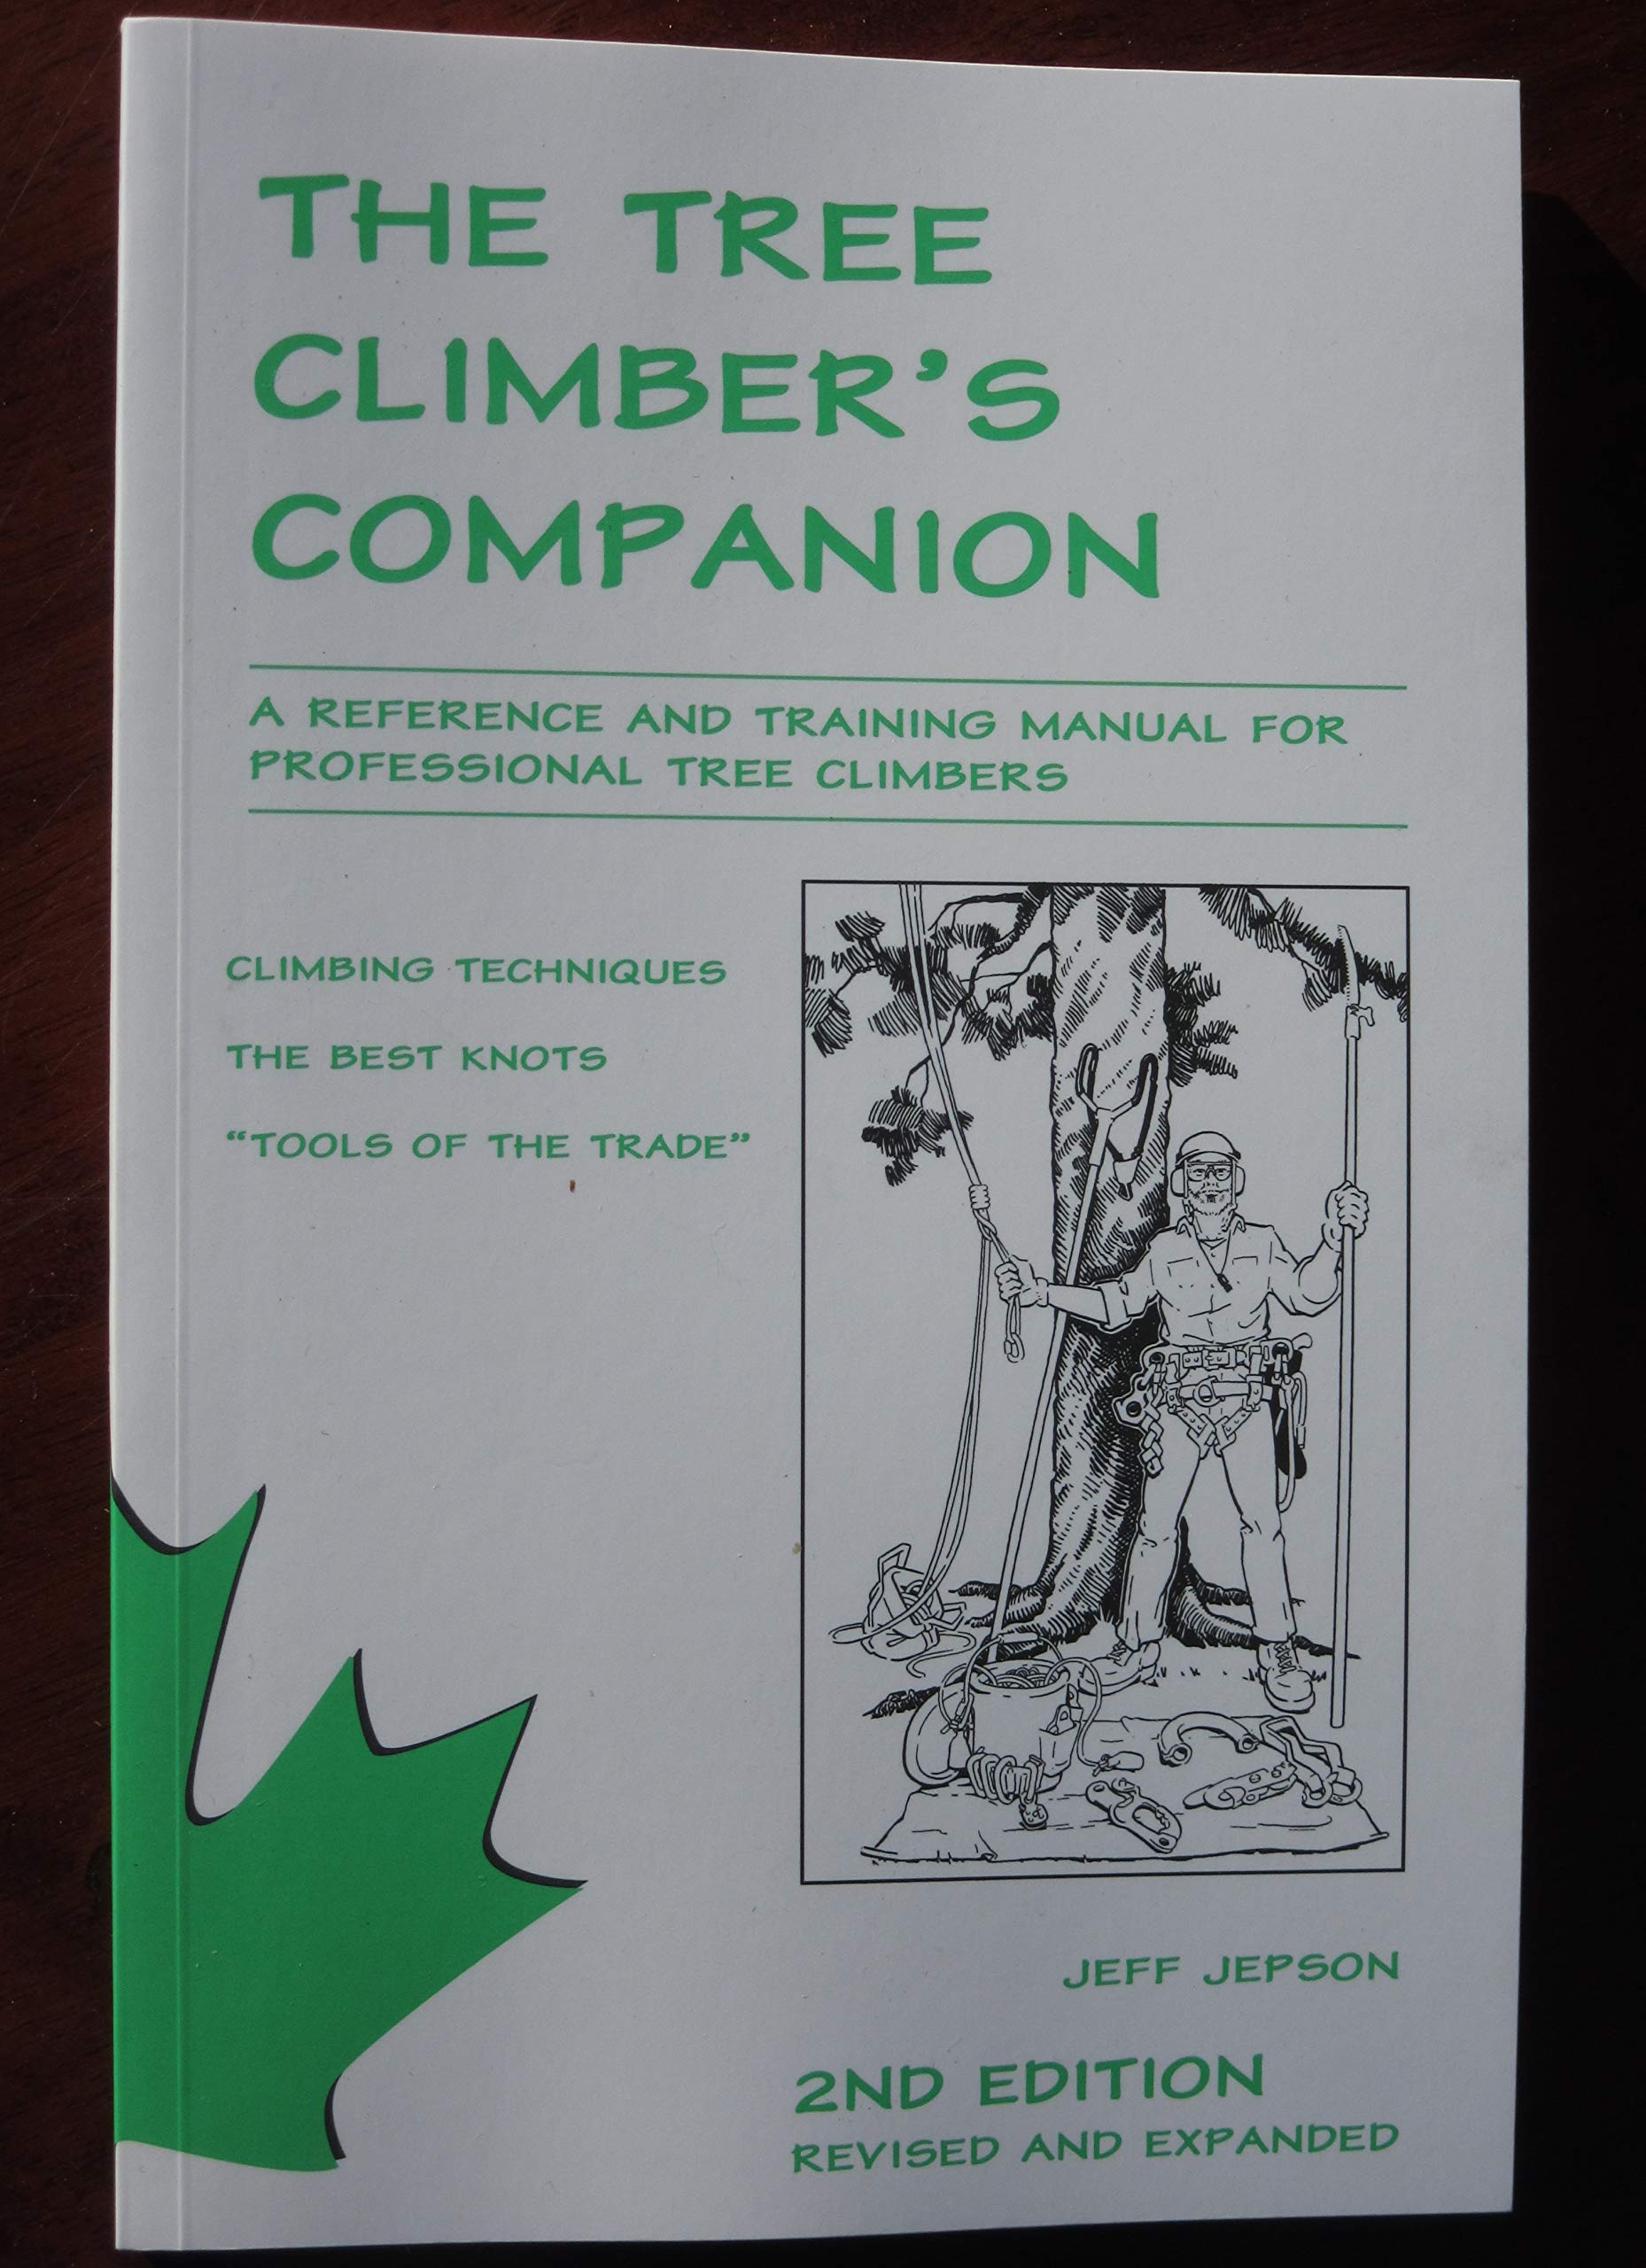 The Tree Climber’s Companion Book Exam